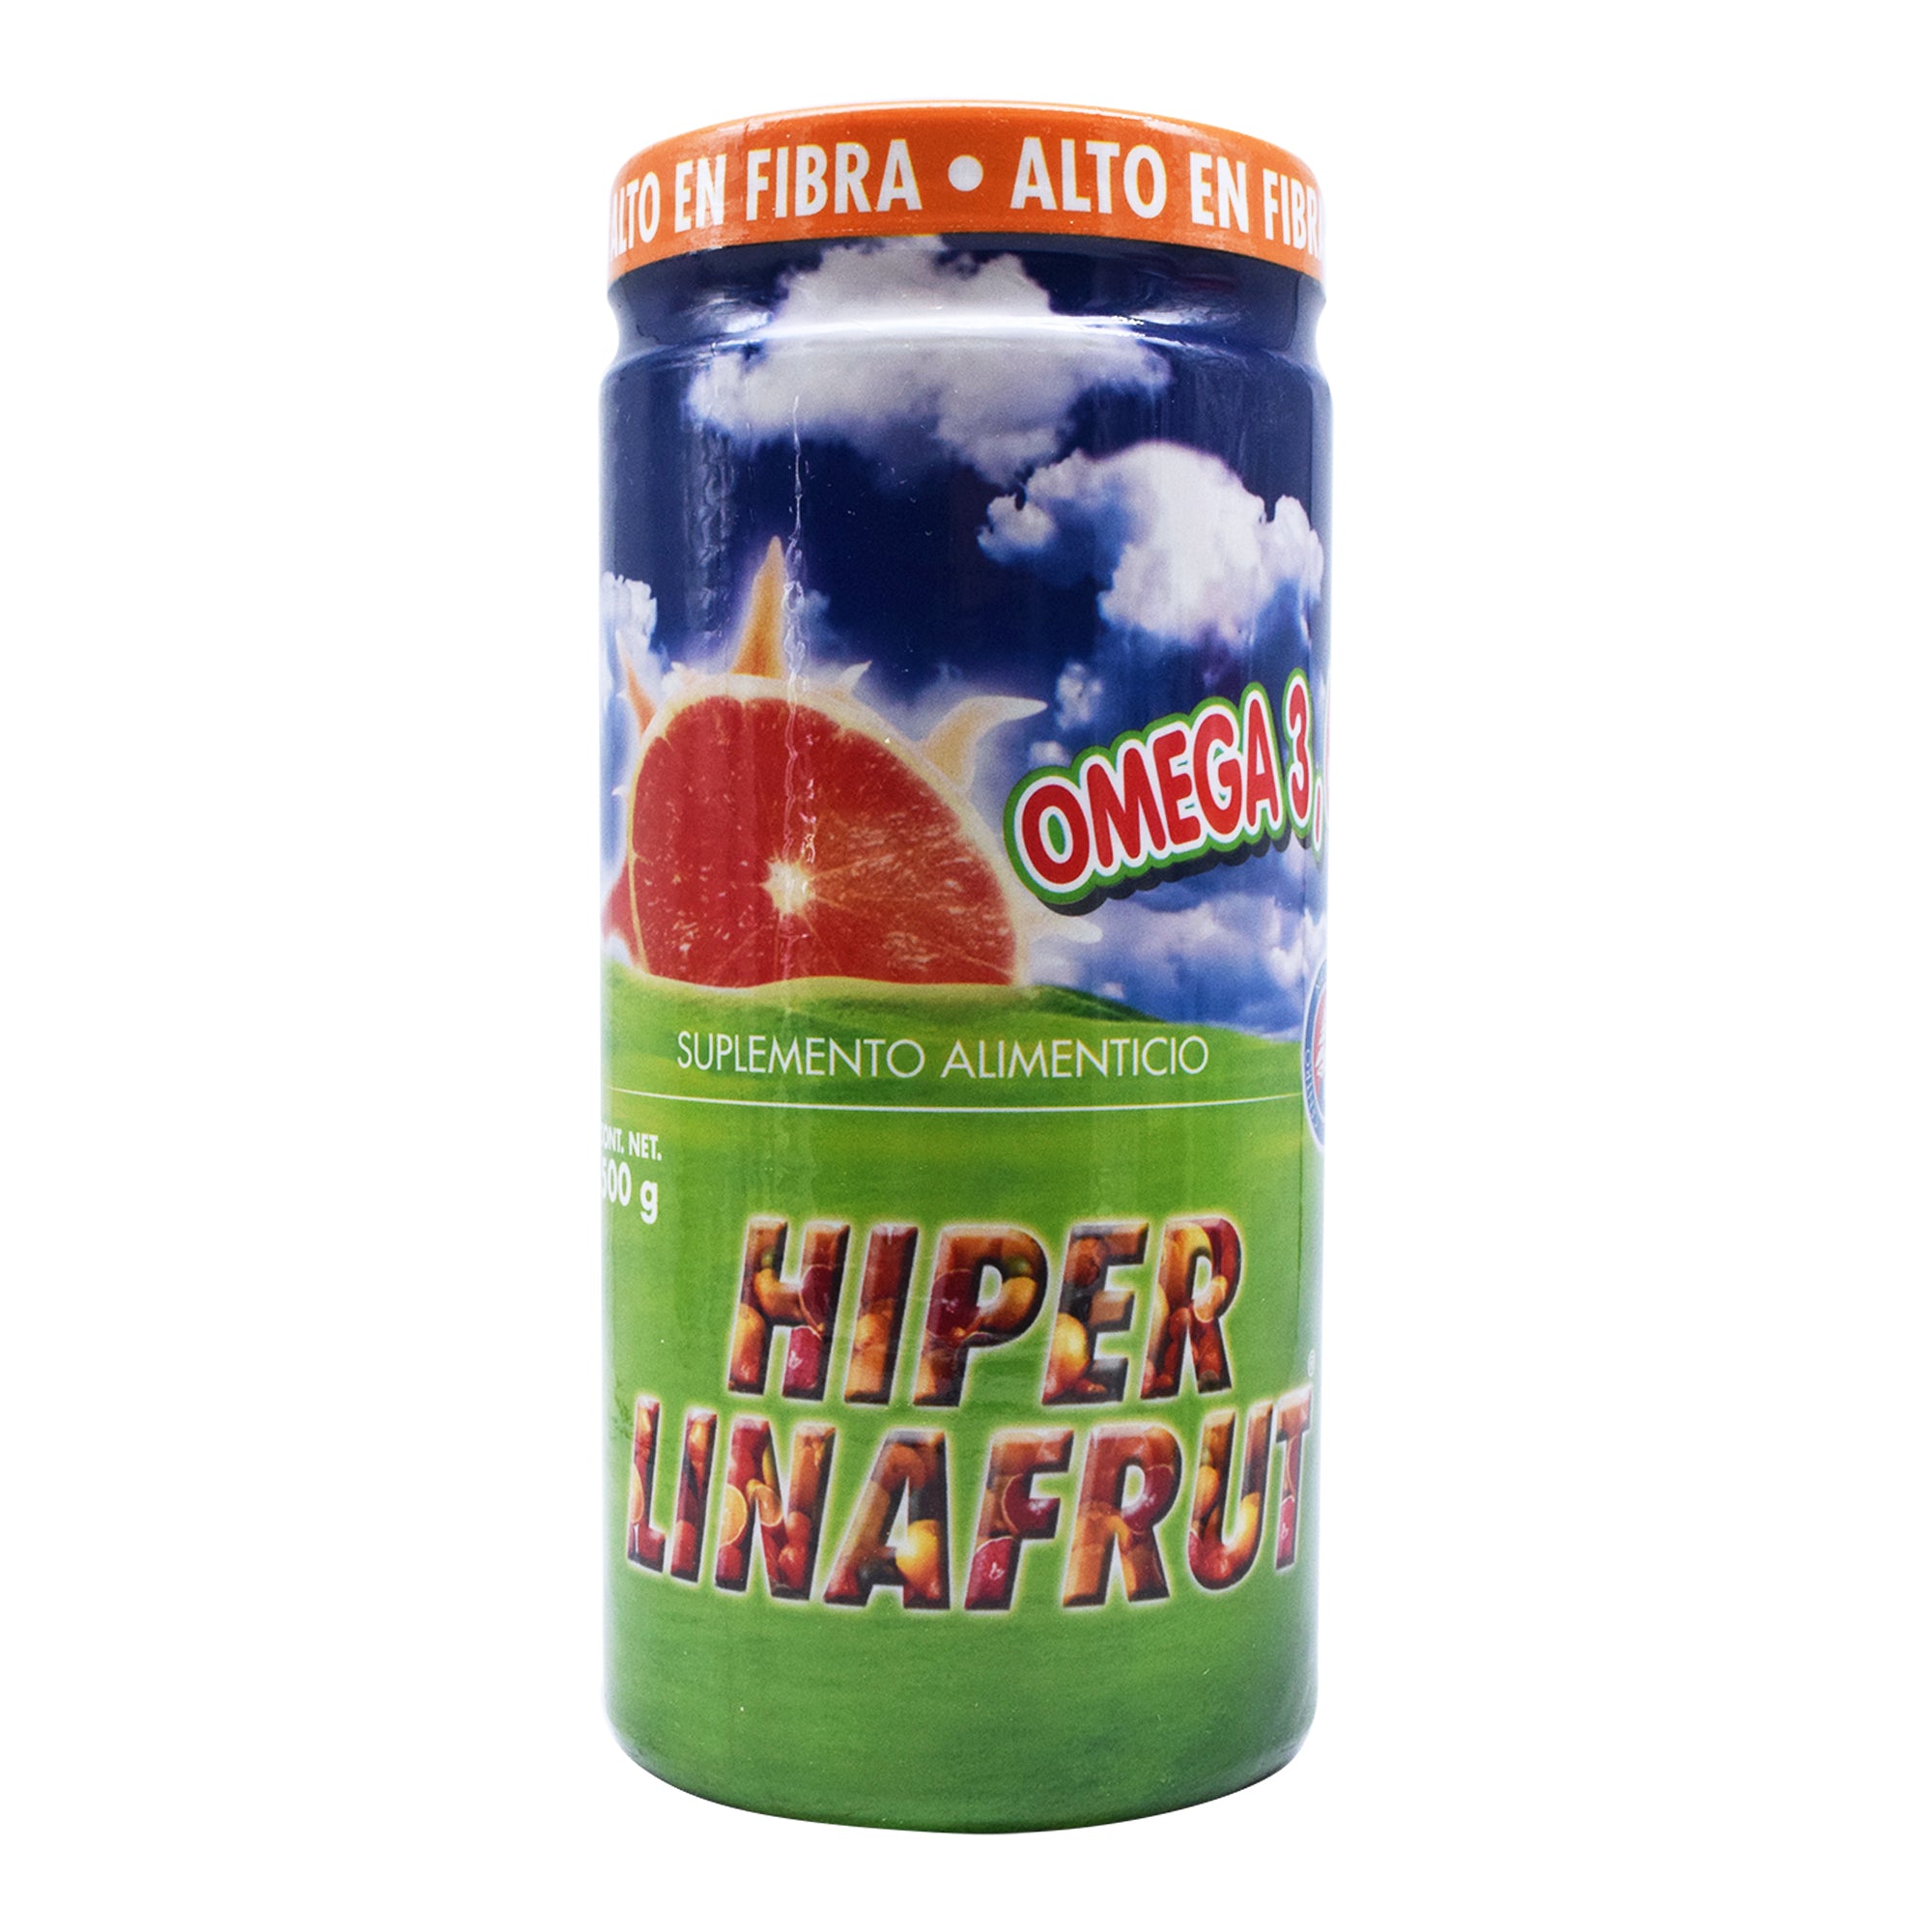 Fibra hiperlinafrut 500 g